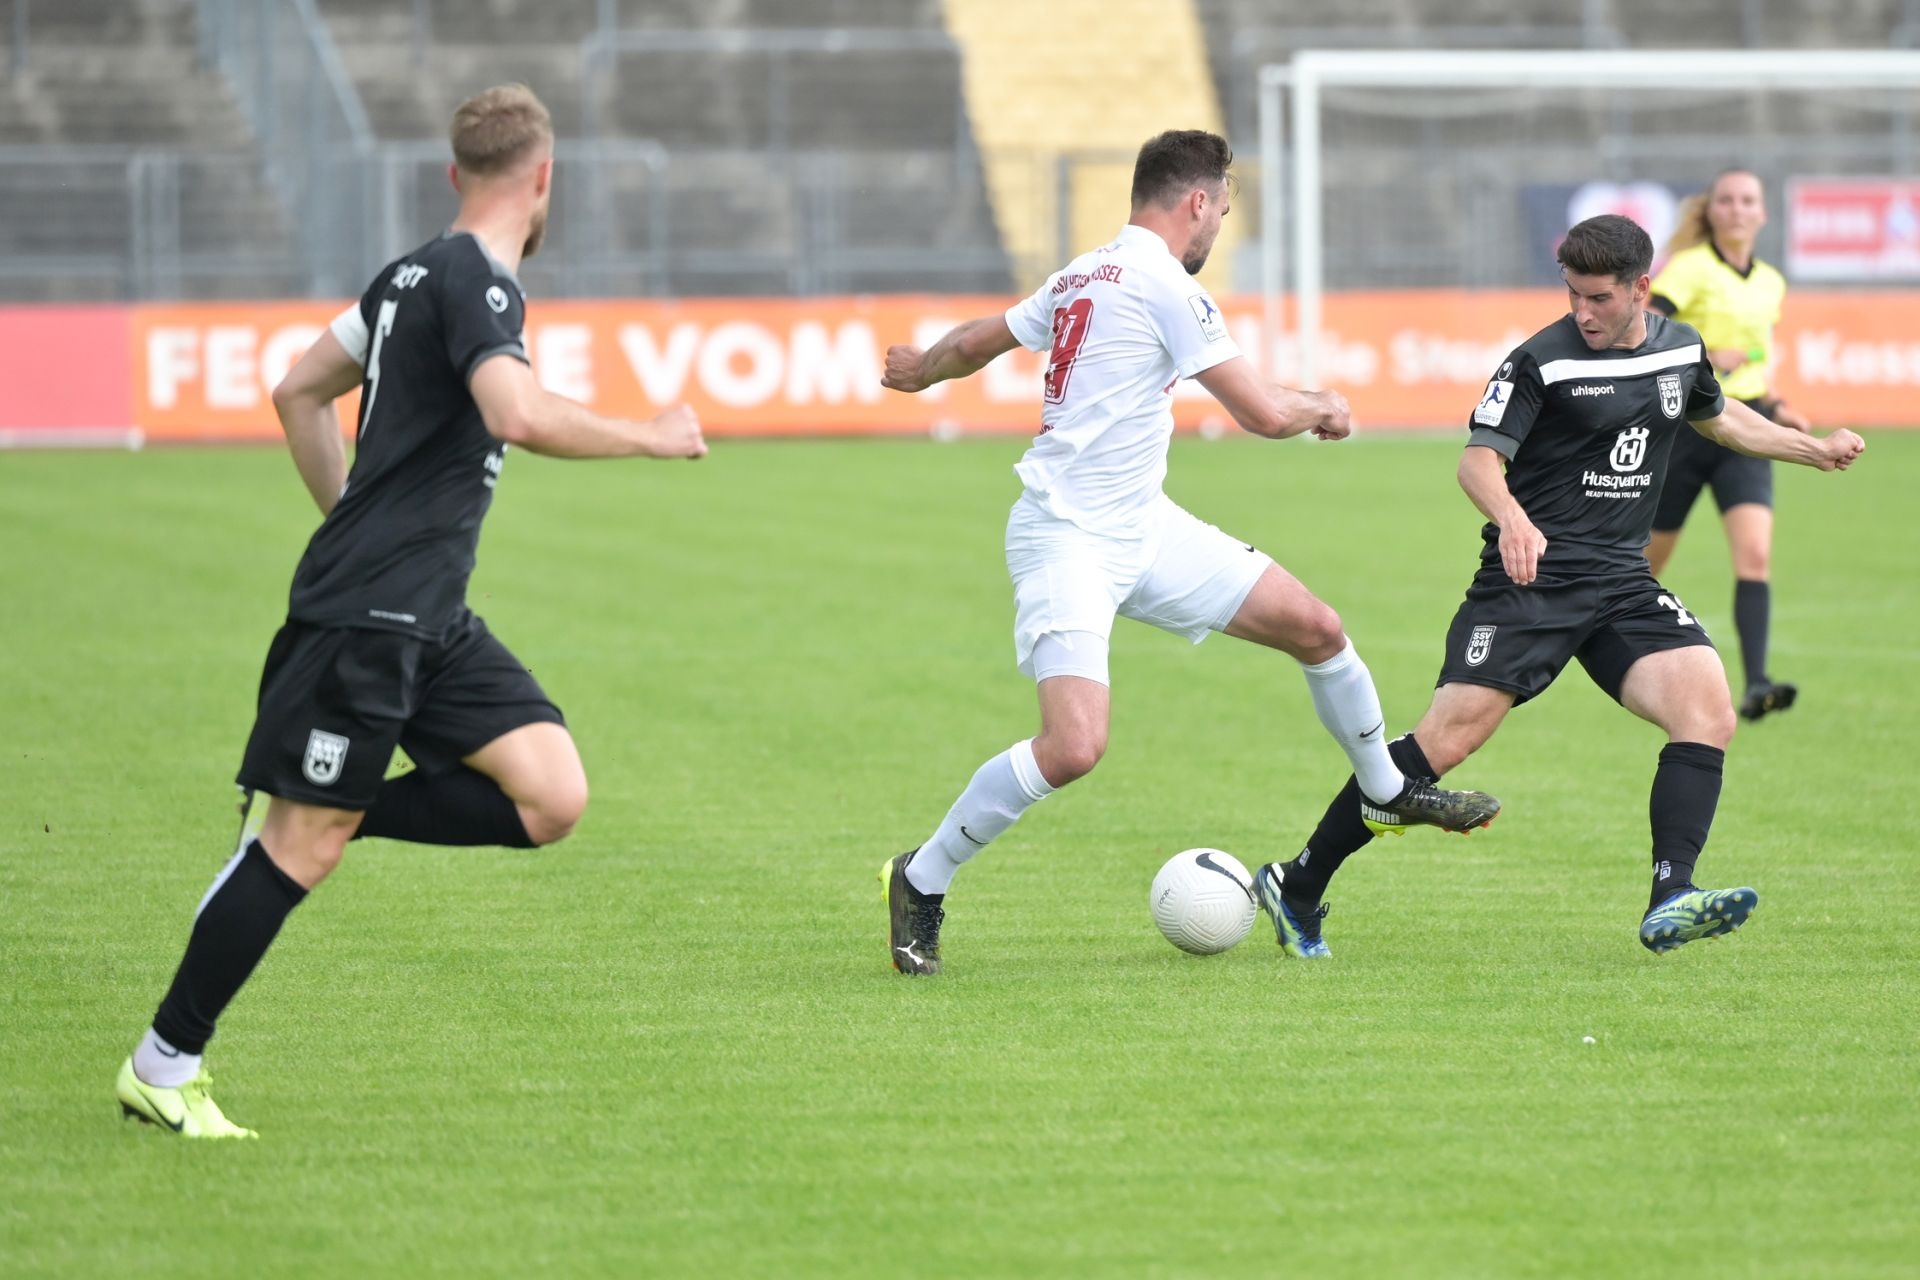 Regionalliga Südwest 2020/21, KSV Hessen Kassel, SSV Ulm 1846, Endstand 3:1